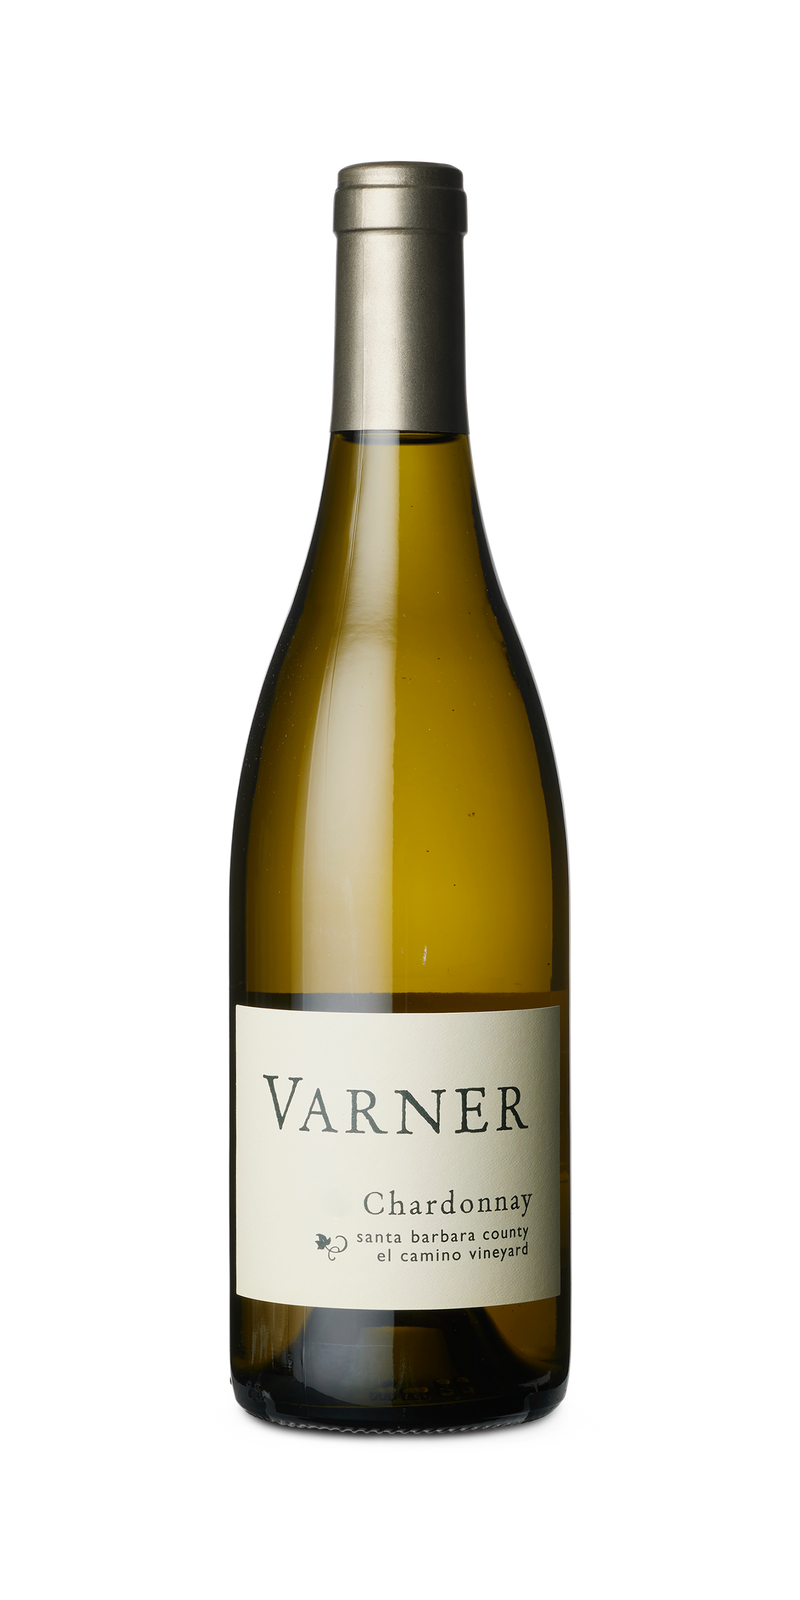 Varner, Chardonnay 2017, El Camino Vineyard, Santa Barbara County